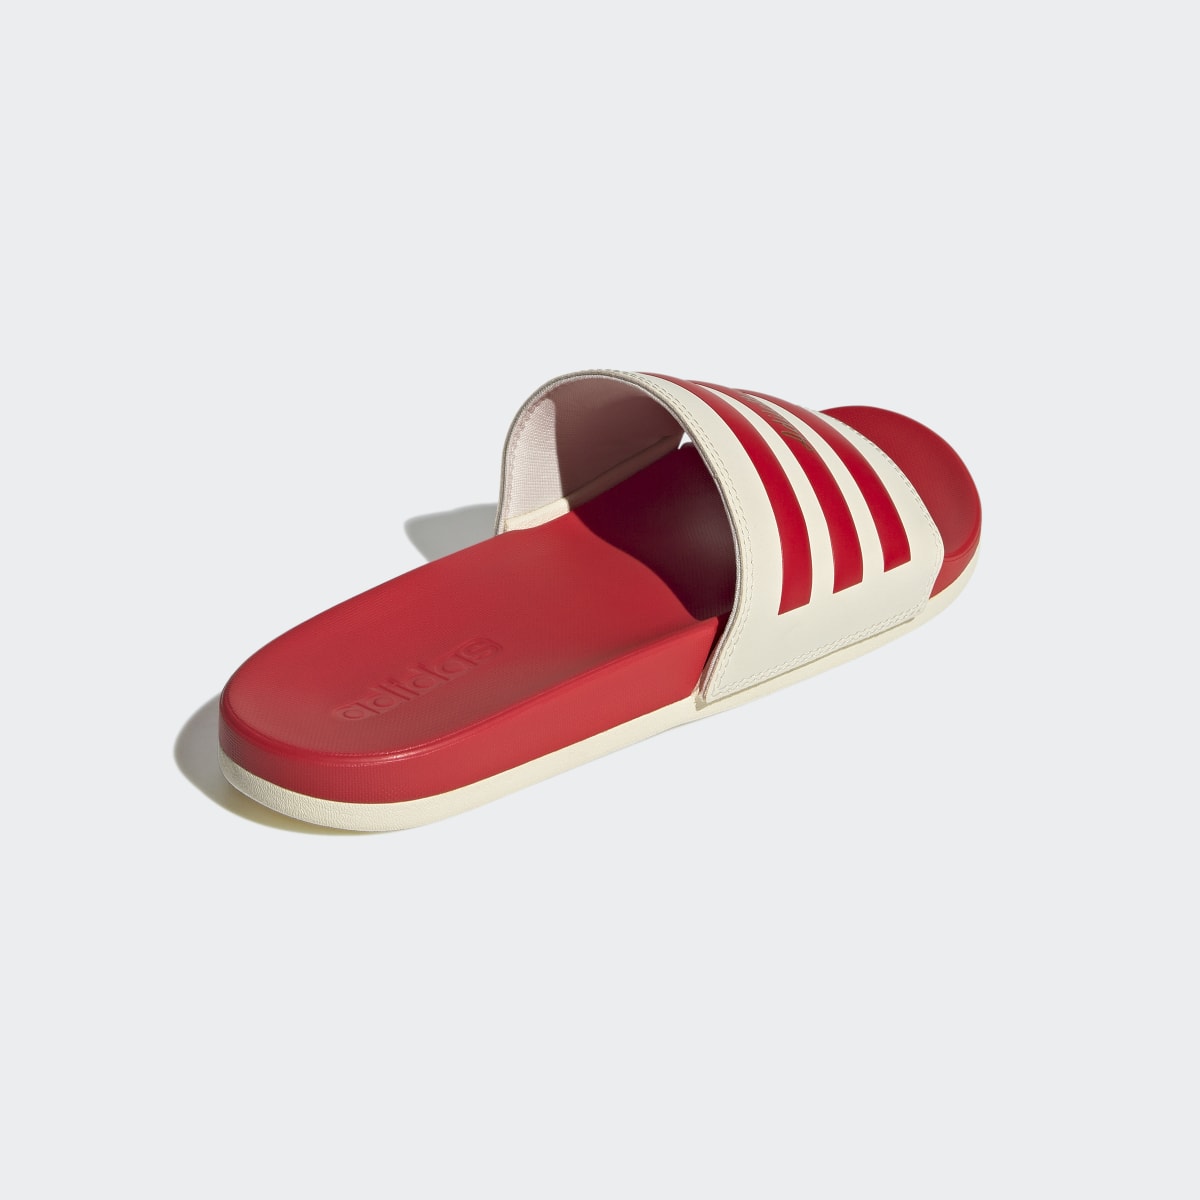 Adidas Adilette Comfort Slides. 6